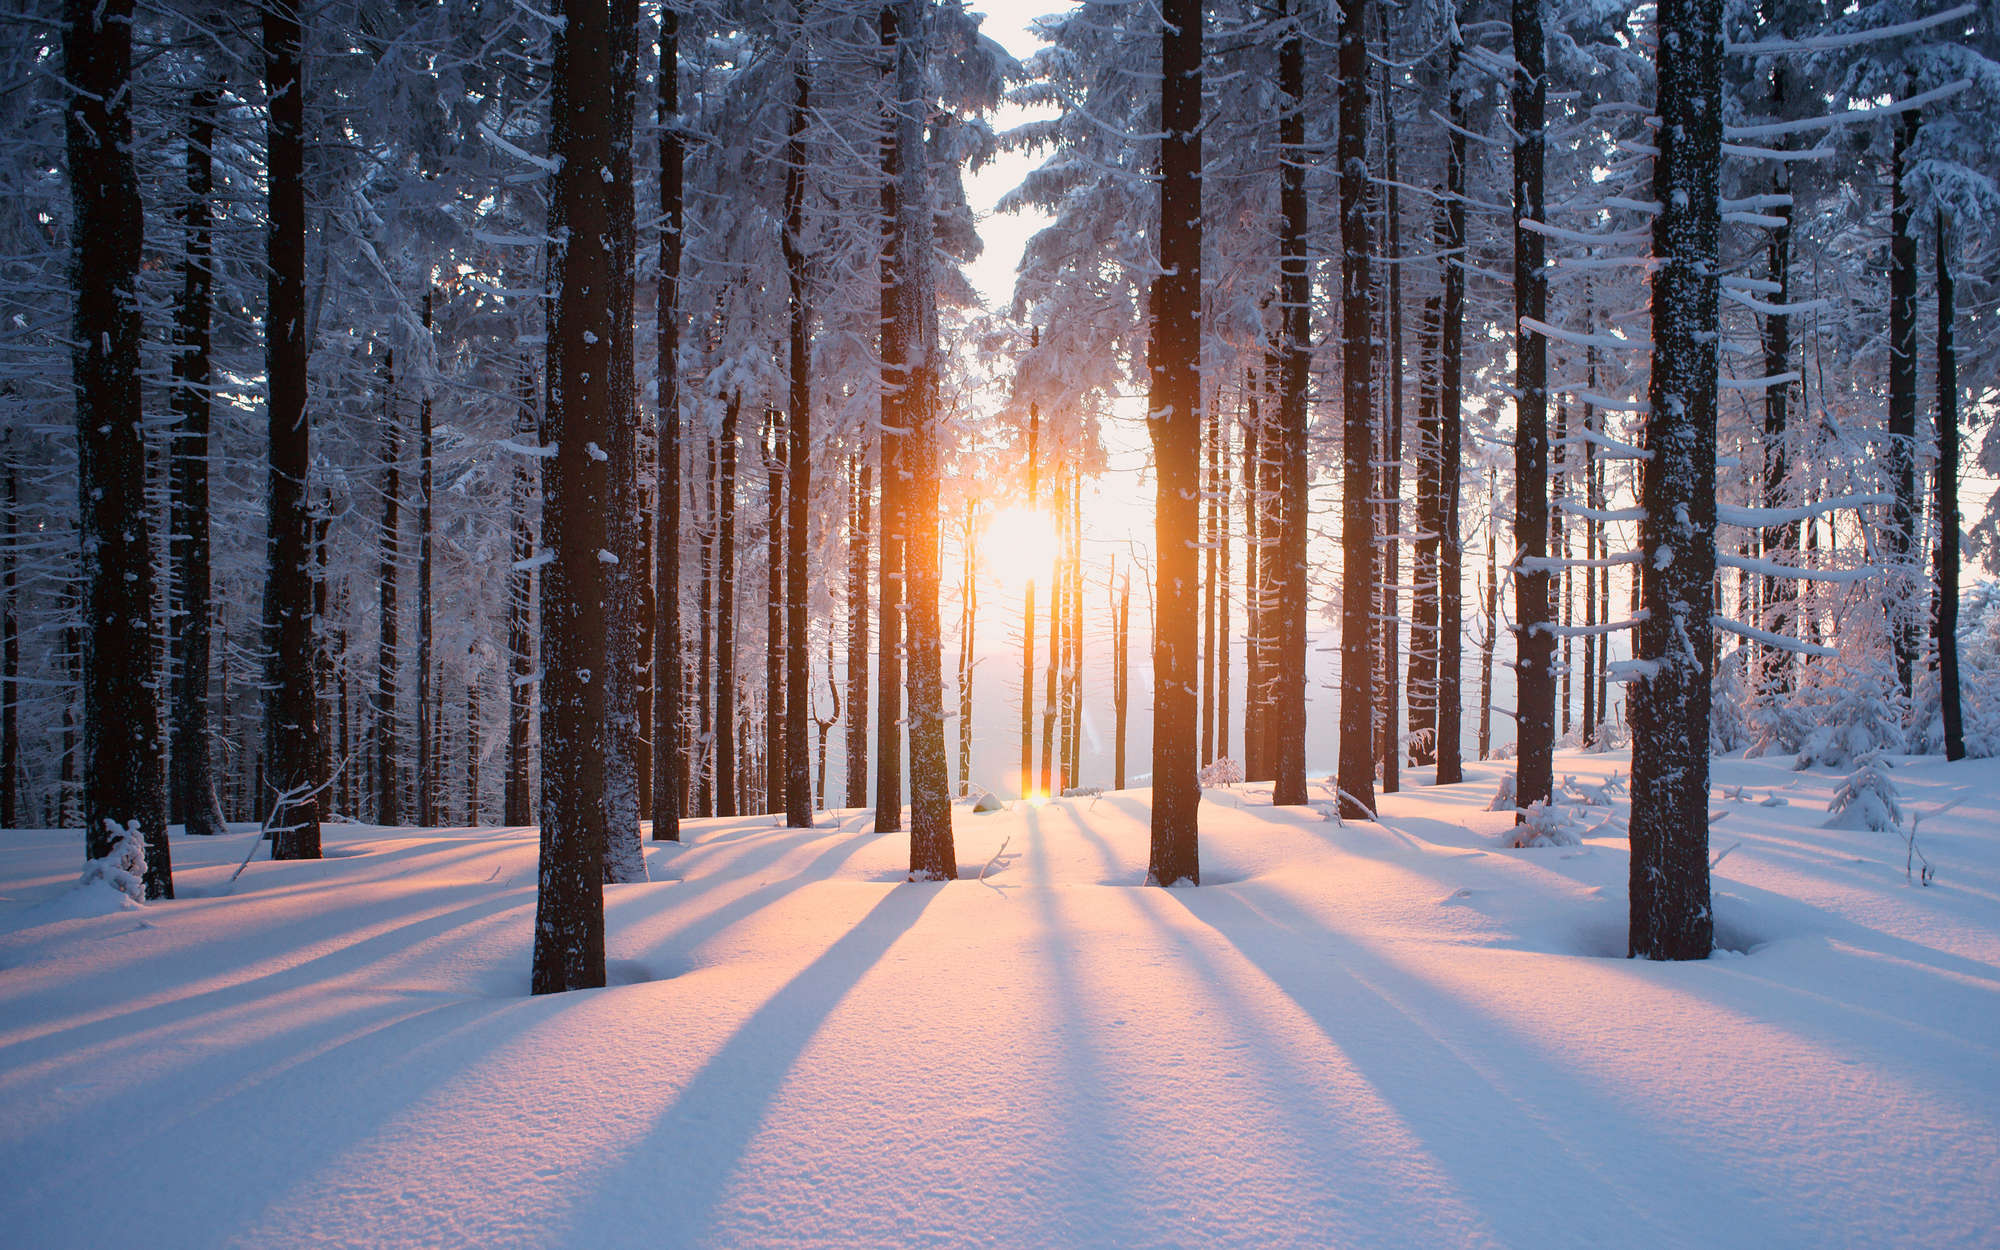             Fotomural nieve en el bosque de invierno - nácar liso
        